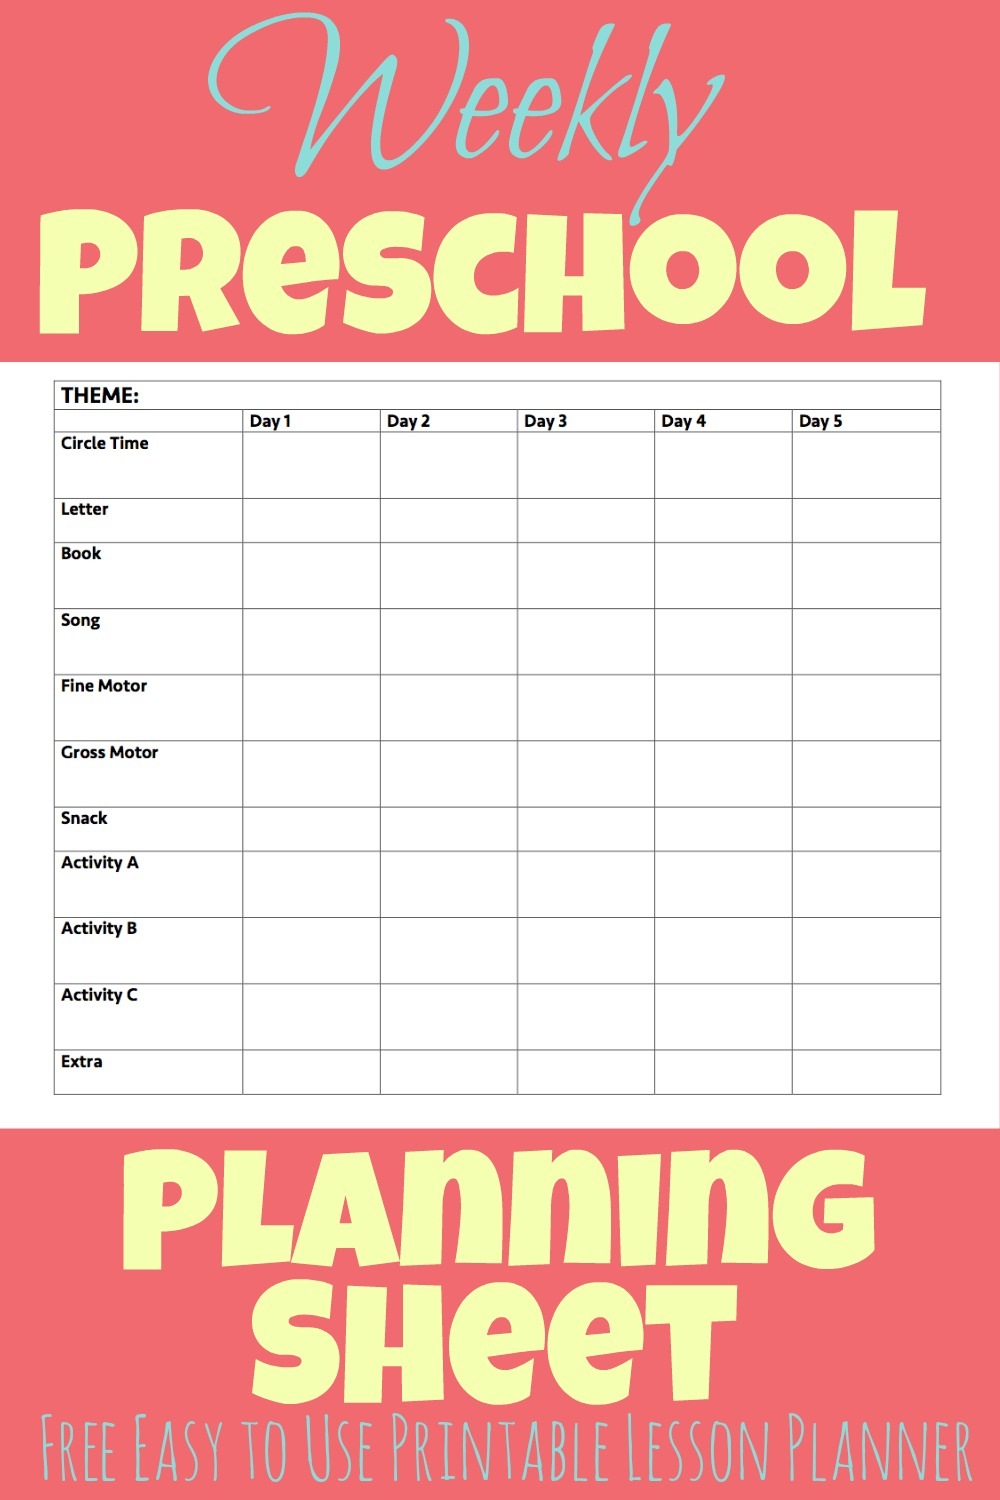 Printable Preschool Week Planning Sheet | More Excellent Me